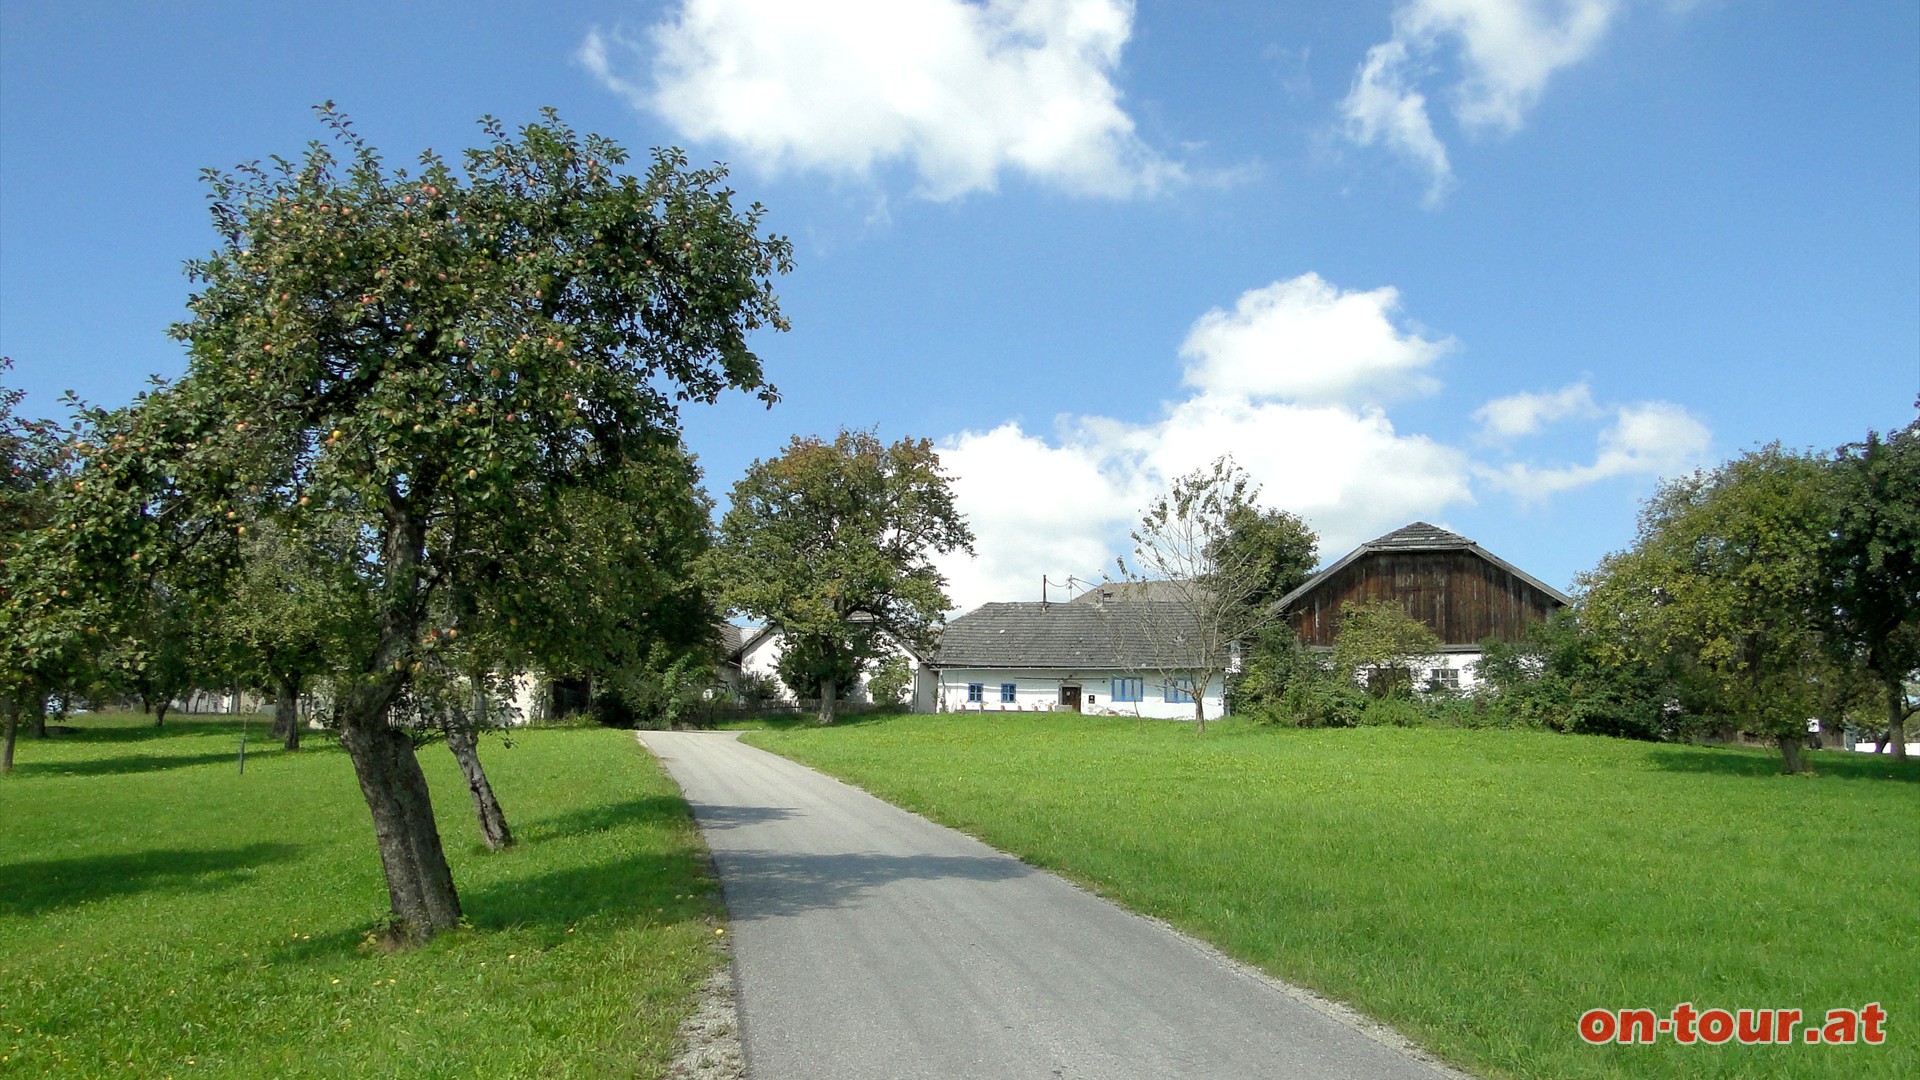 Vor der kleinen Ortschaft -Dorf- schwenkt man Richtung Sden, der Schlingen-Halbinsel entgegen.